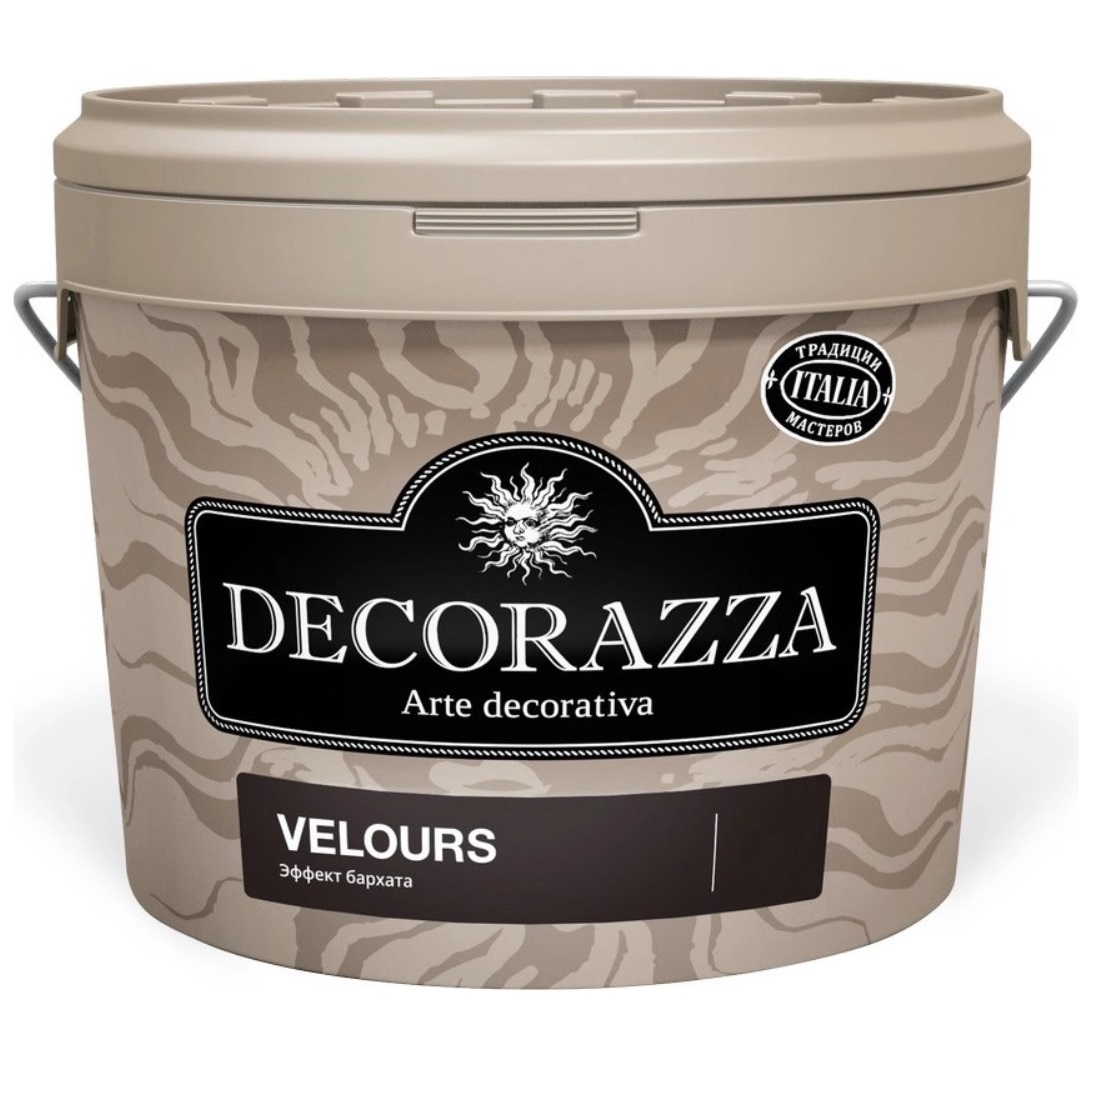 Где купить Покрытие декоративное с эффектом бархата Decorazza dz velours vl 001. 1.2 Decorazza 